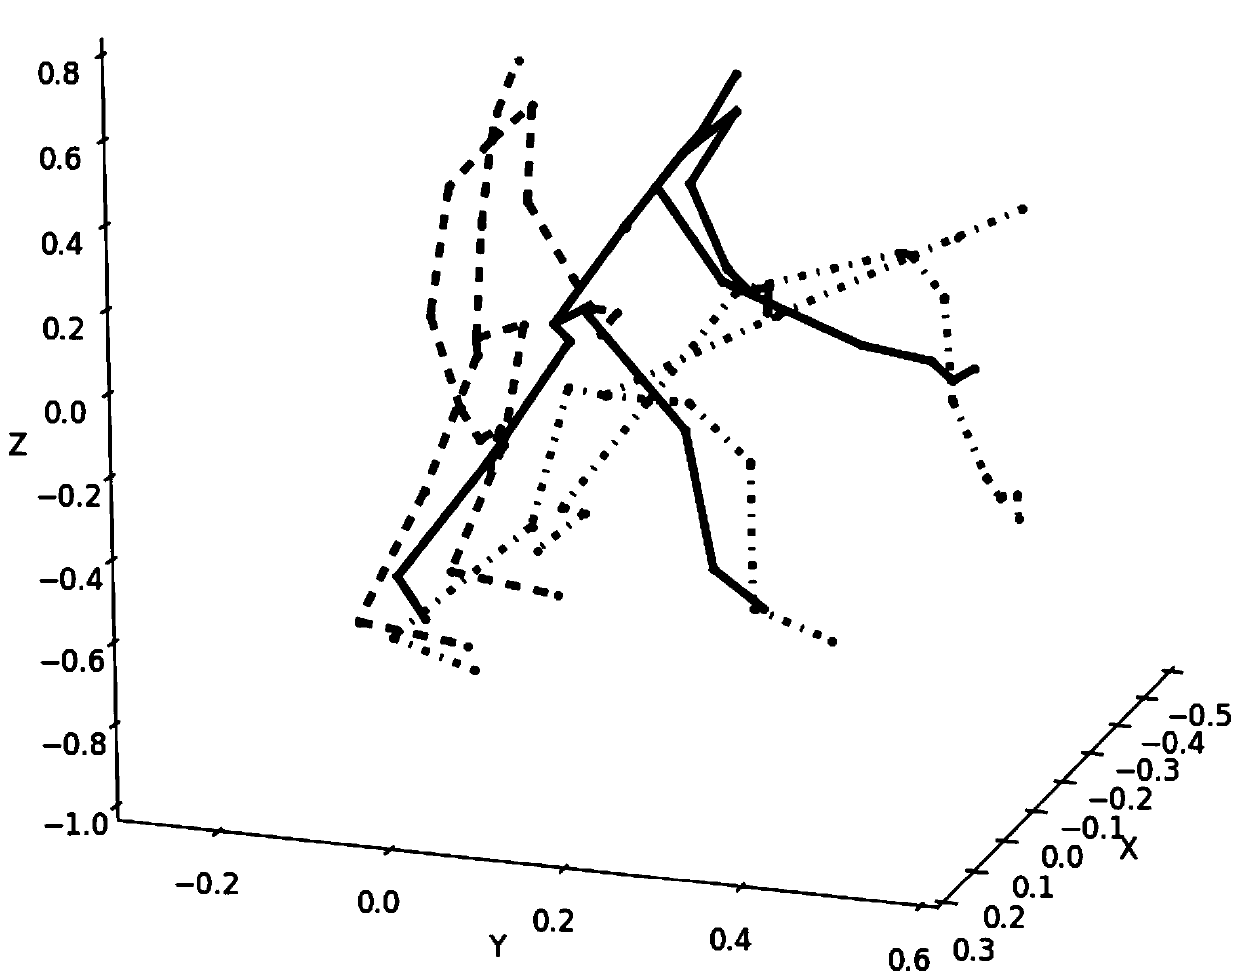 Skeleton data behavior identification method based on graph convolutional neural network